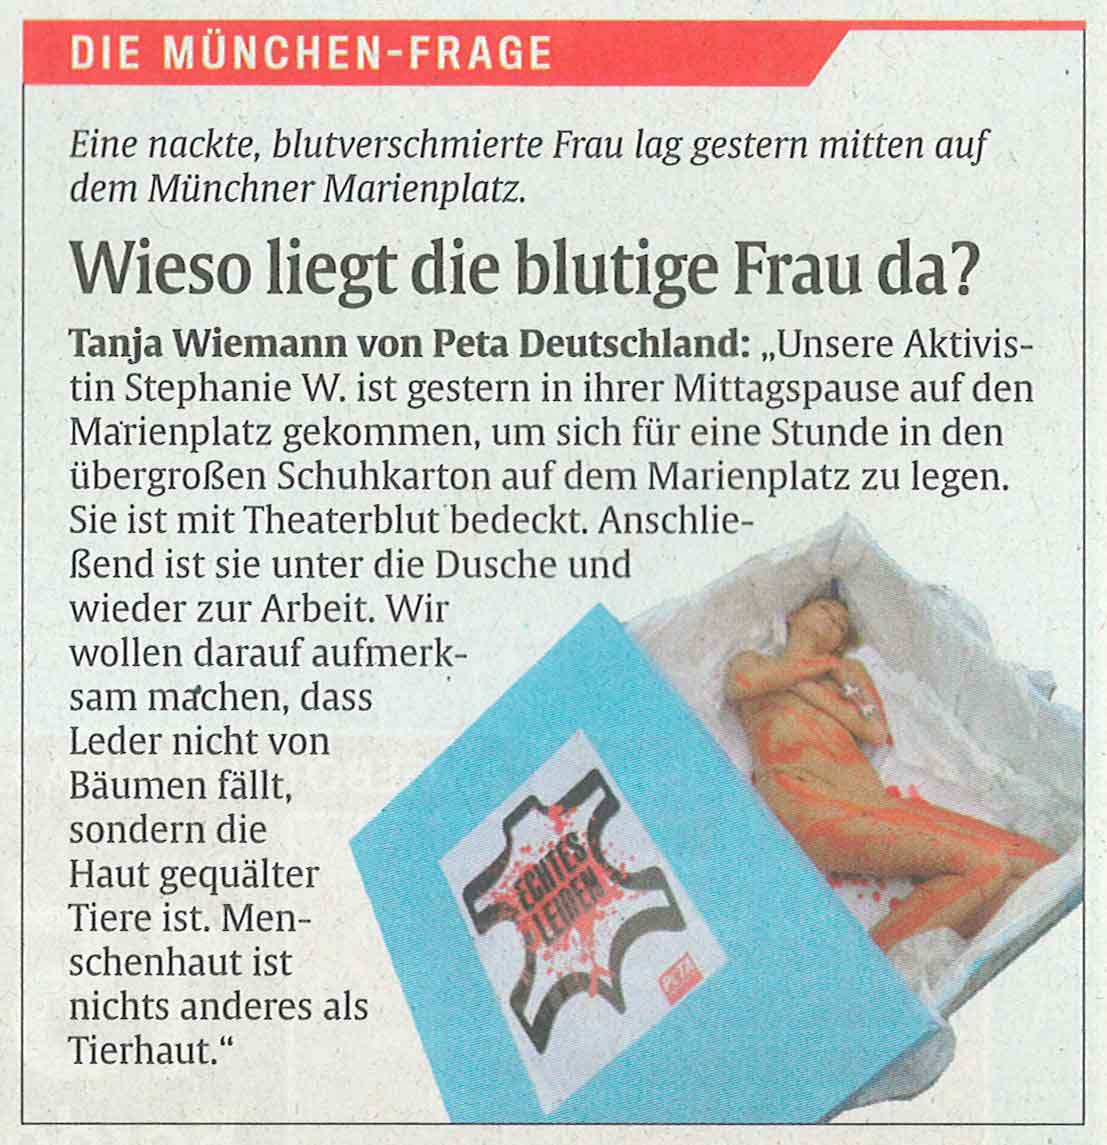 Abendzeitung, Stephanie Weiser, T!erLaut